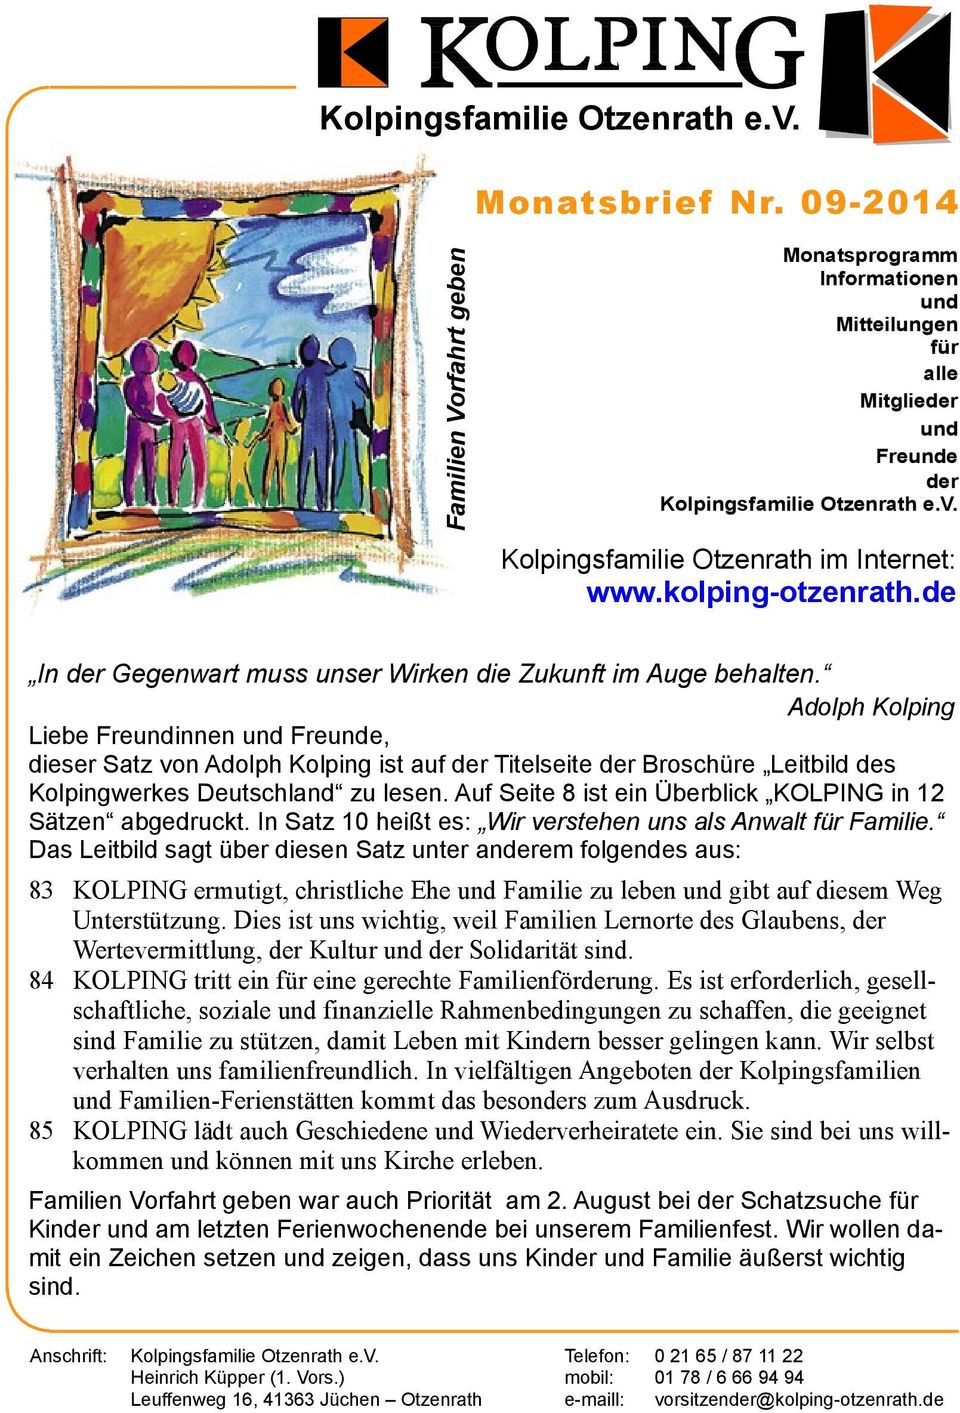 Adolph Kolping Liebe Freundinnen und Freunde, dieser Satz von Adolph Kolping ist auf der Titelseite der Broschüre Leitbild des Kolpingwerkes Deutschland zu lesen.